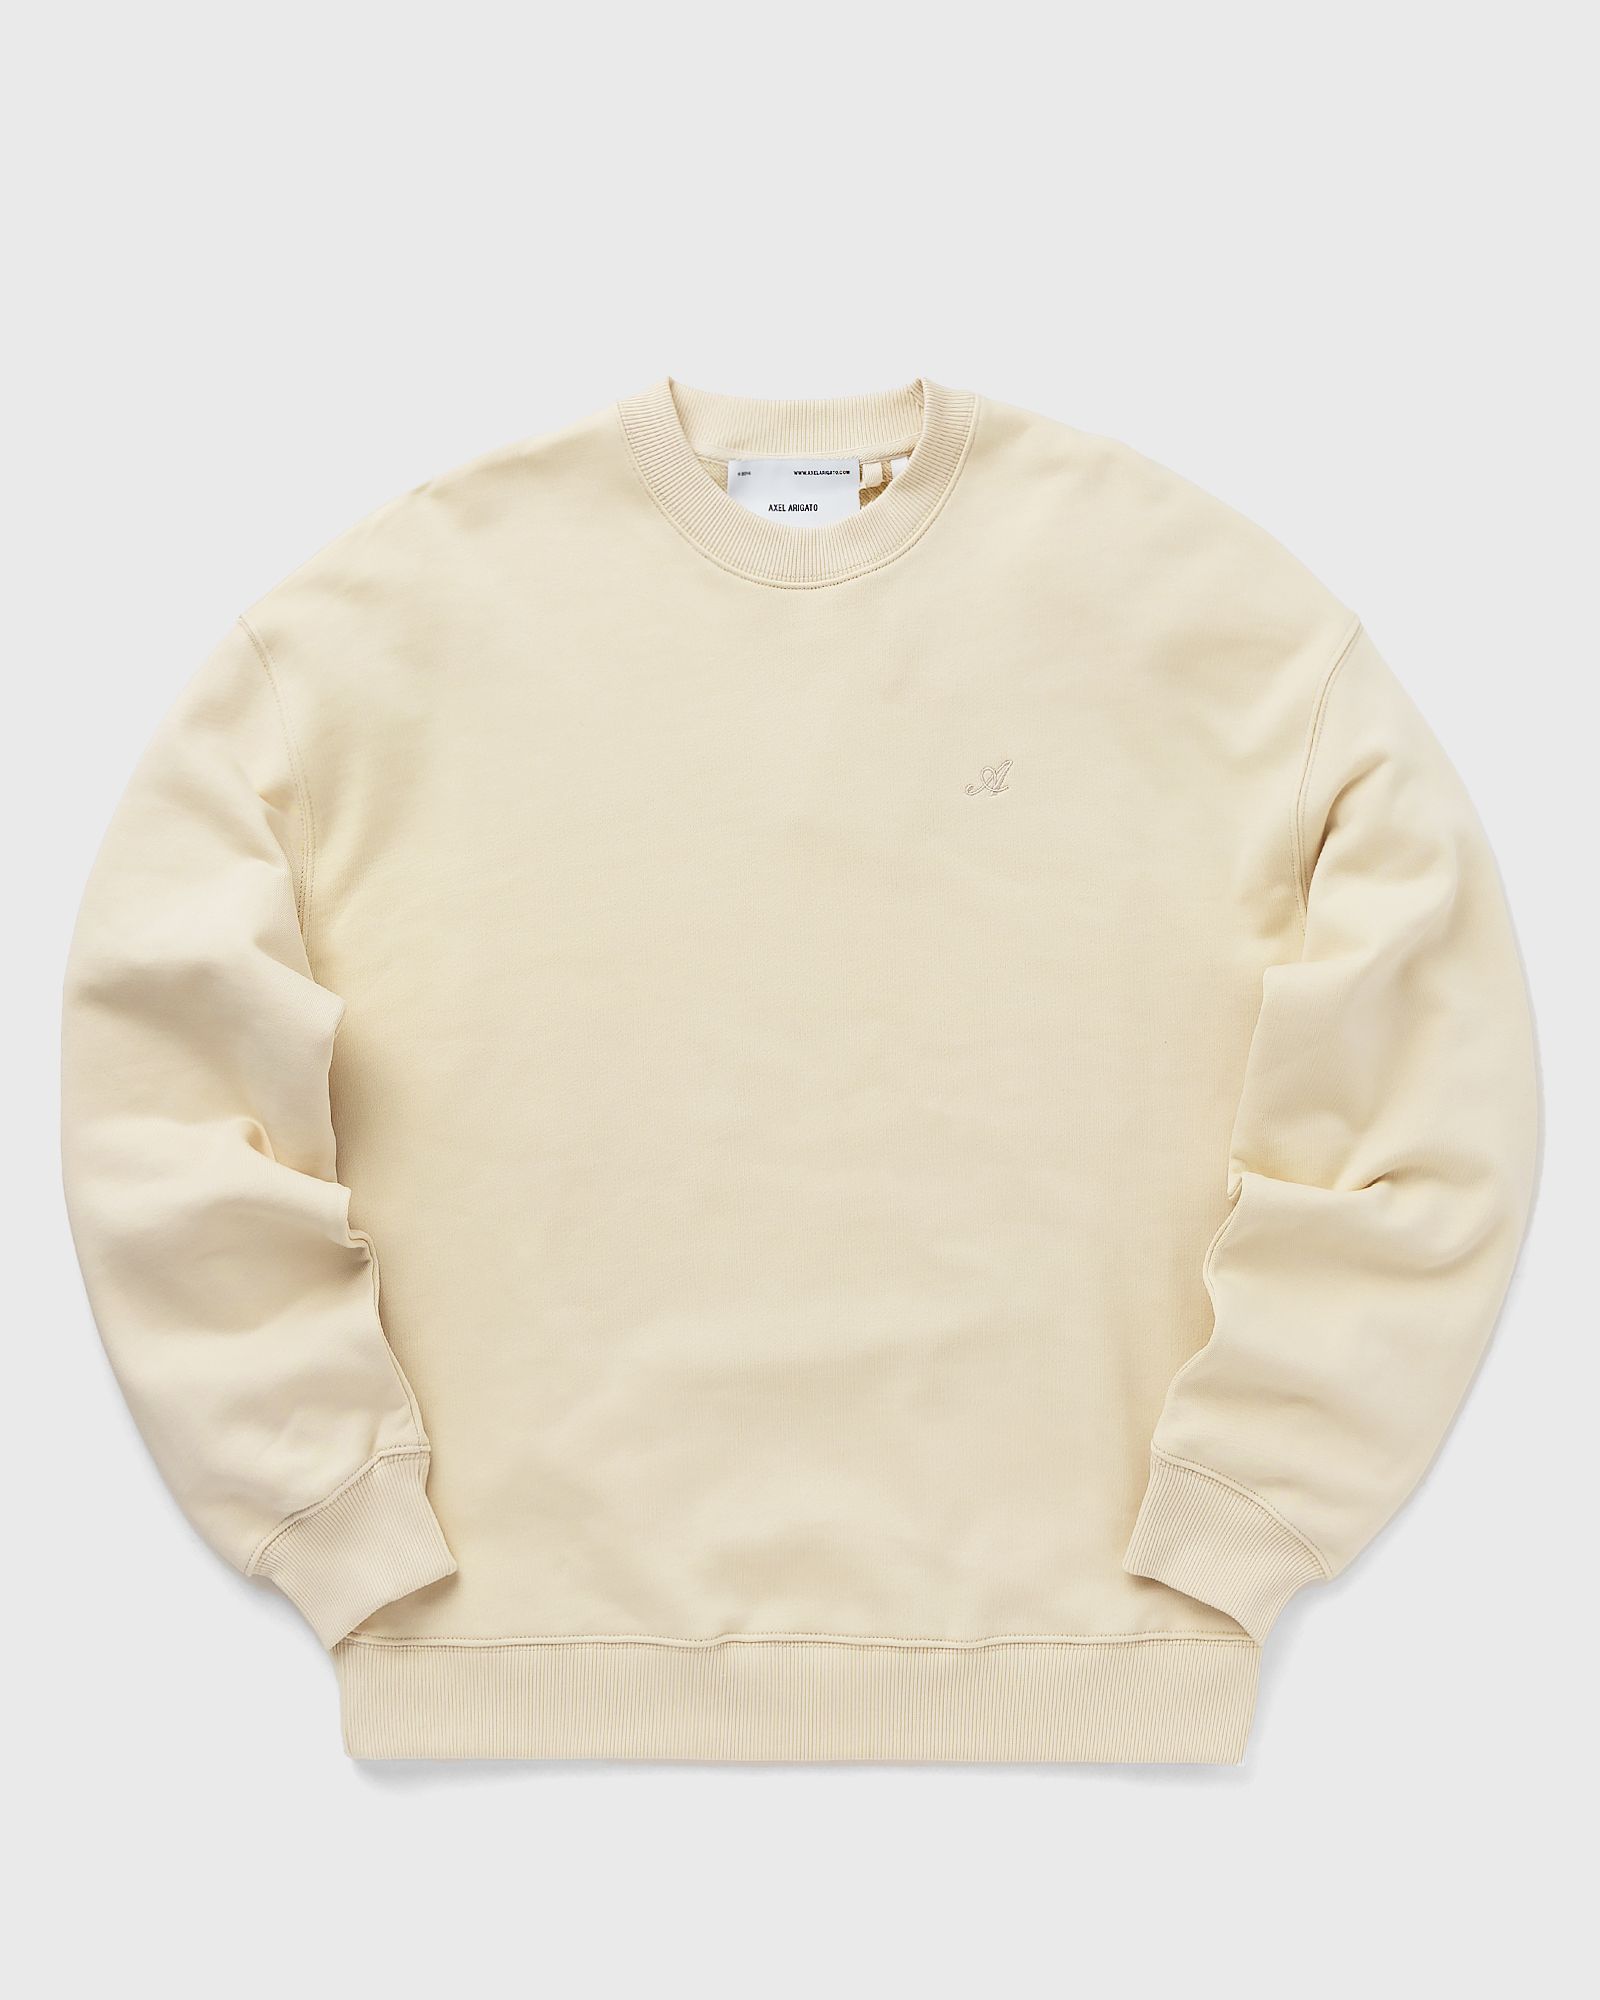 Axel Arigato - honor sweatshirt men sweatshirts beige in größe:s